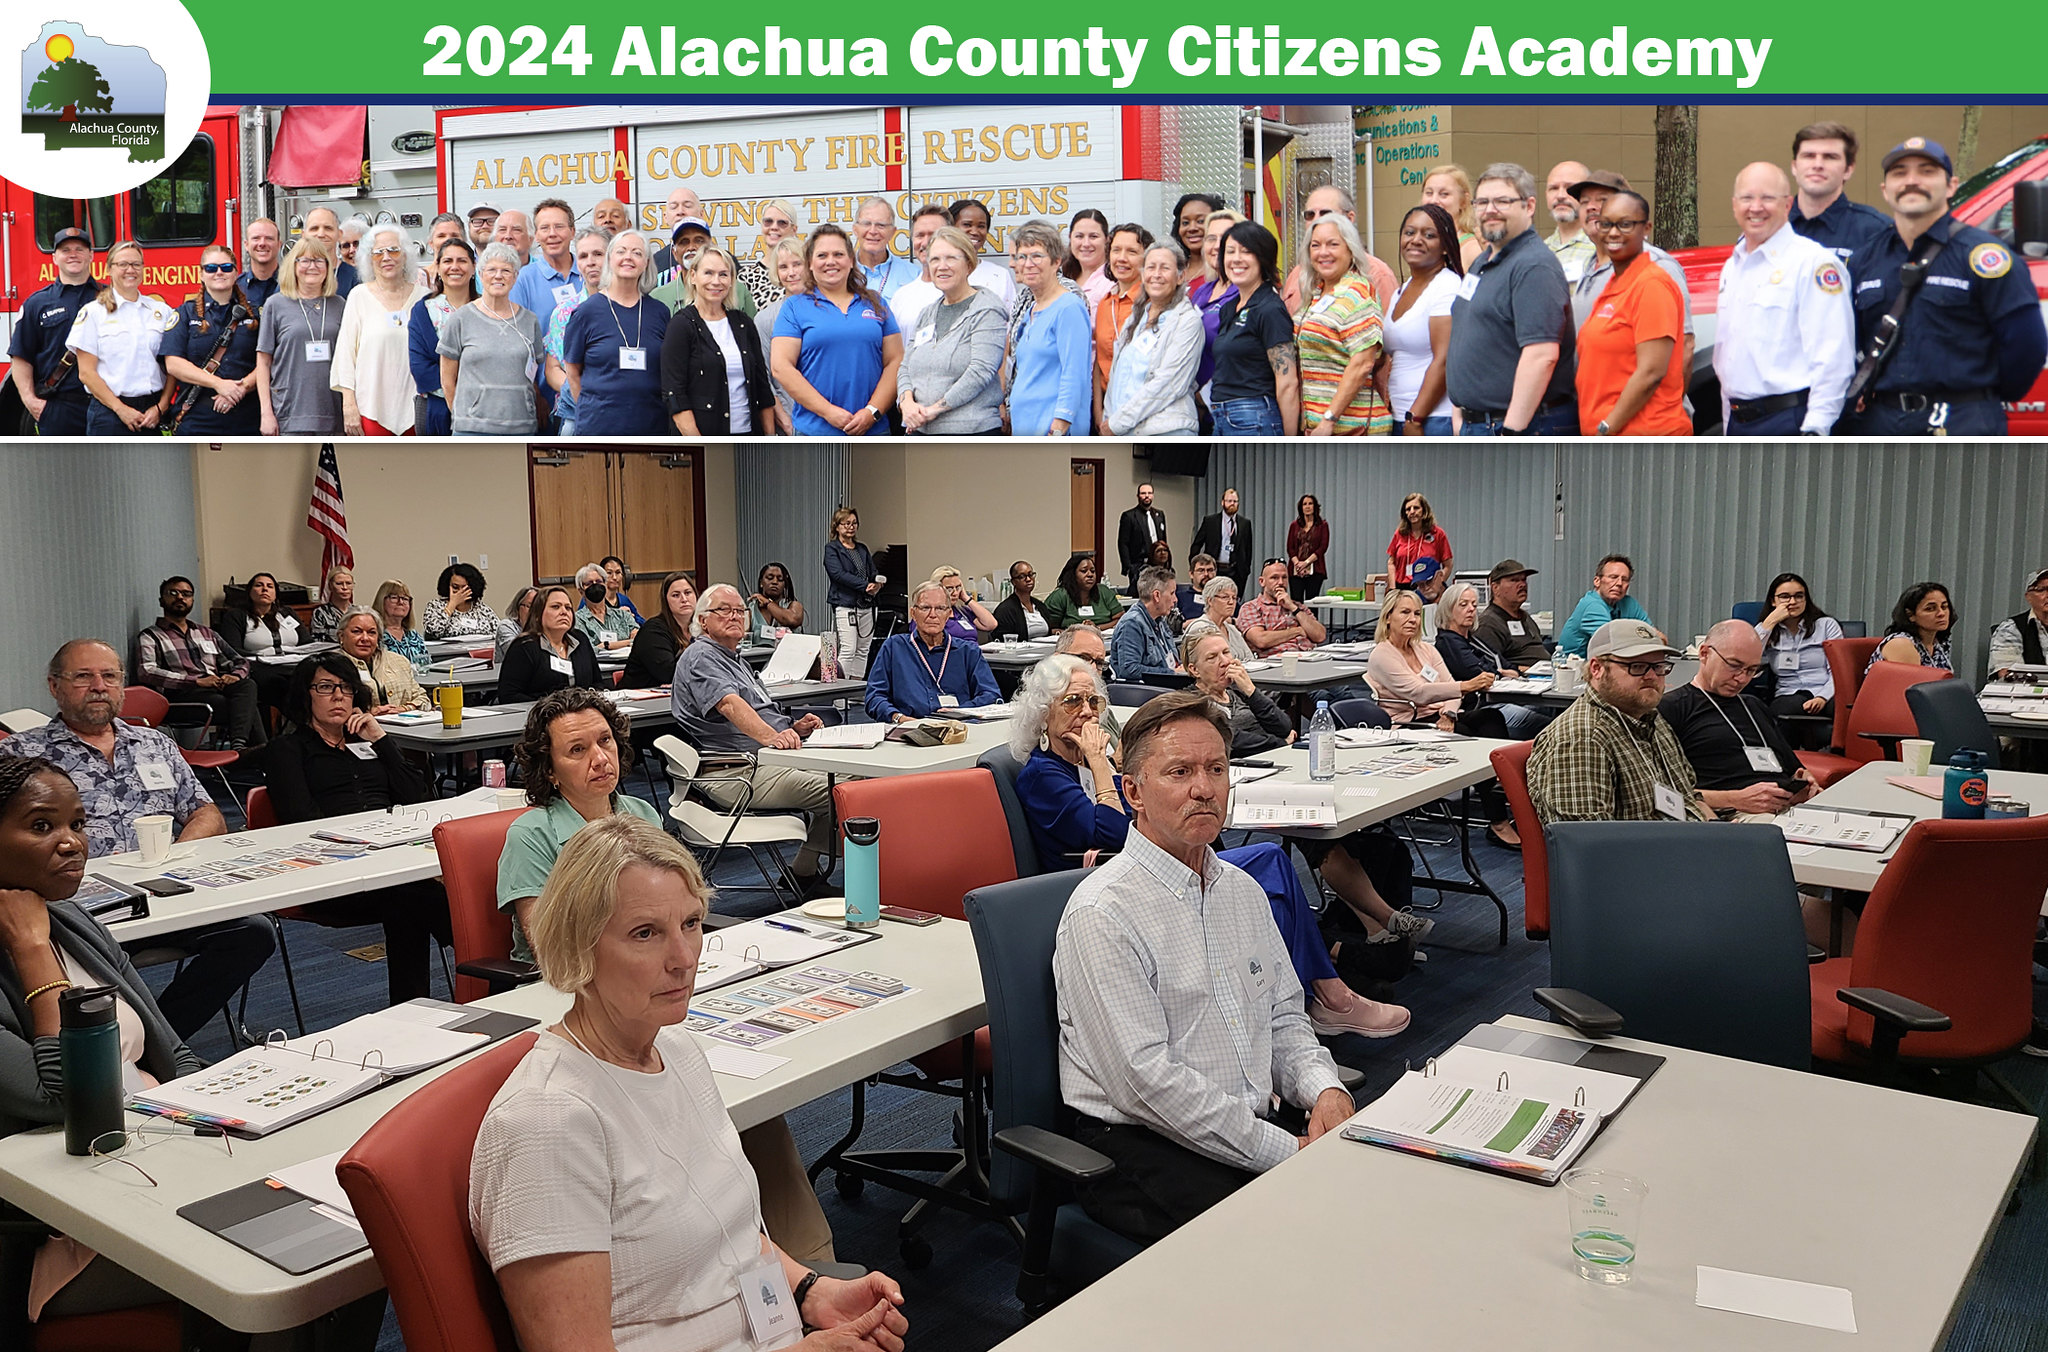 Alachua County Citizens Academy